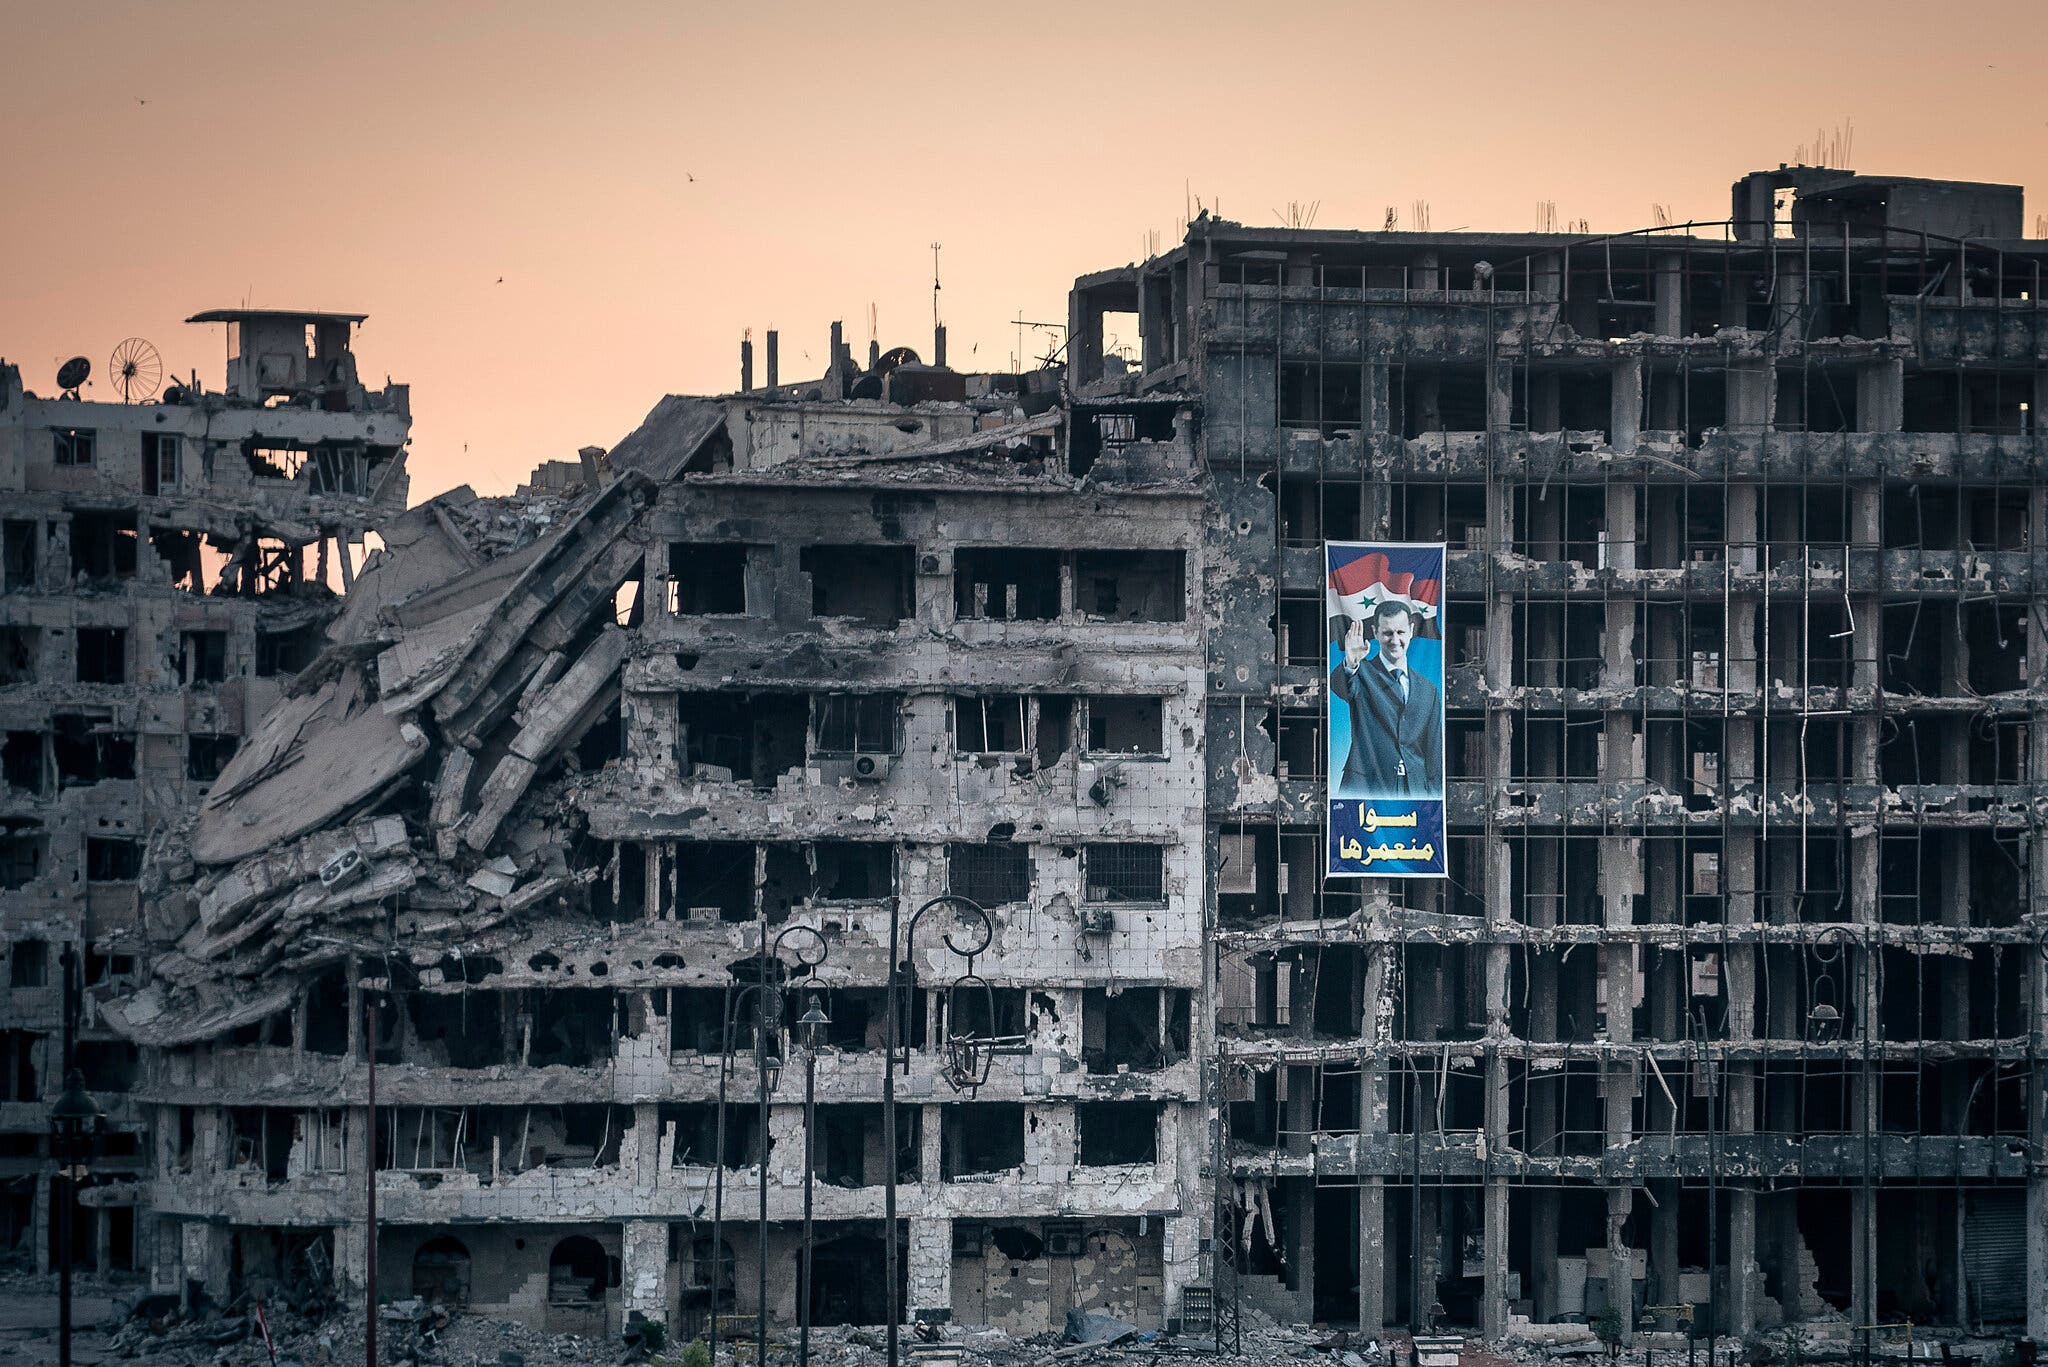 ملصق للرئيس بشار الأسد في مركز تجاري مدمر في حمص، سوريا سنة 2014.